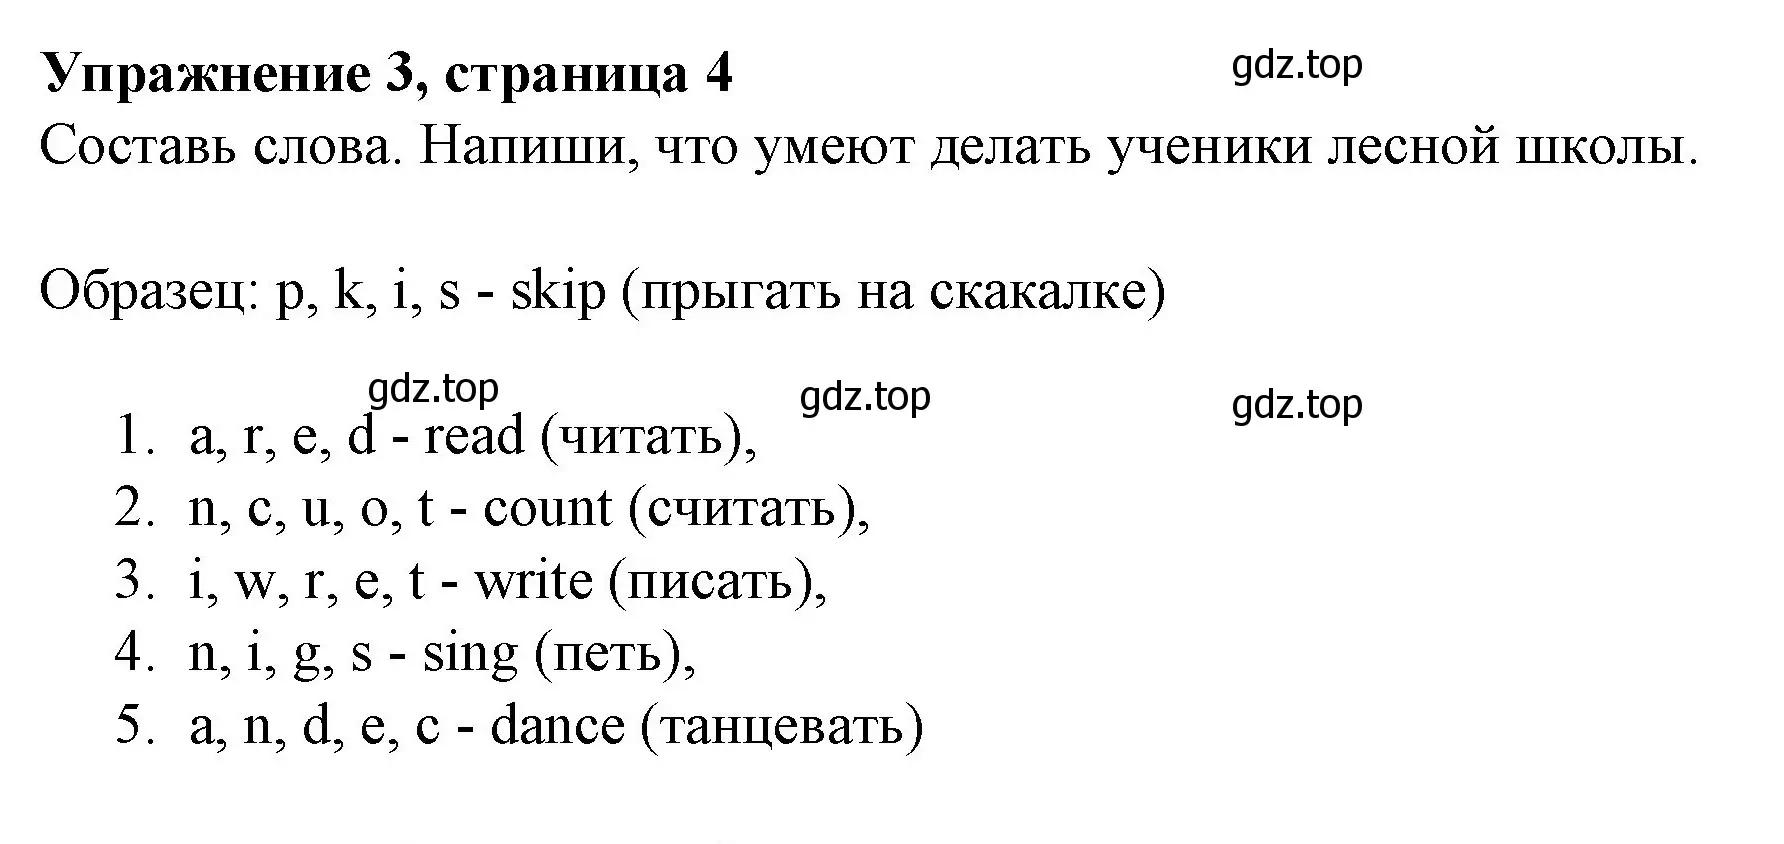 Решение номер 3 (страница 4) гдз по английскому языку 3 класс Биболетова, Денисенко, рабочая тетрадь